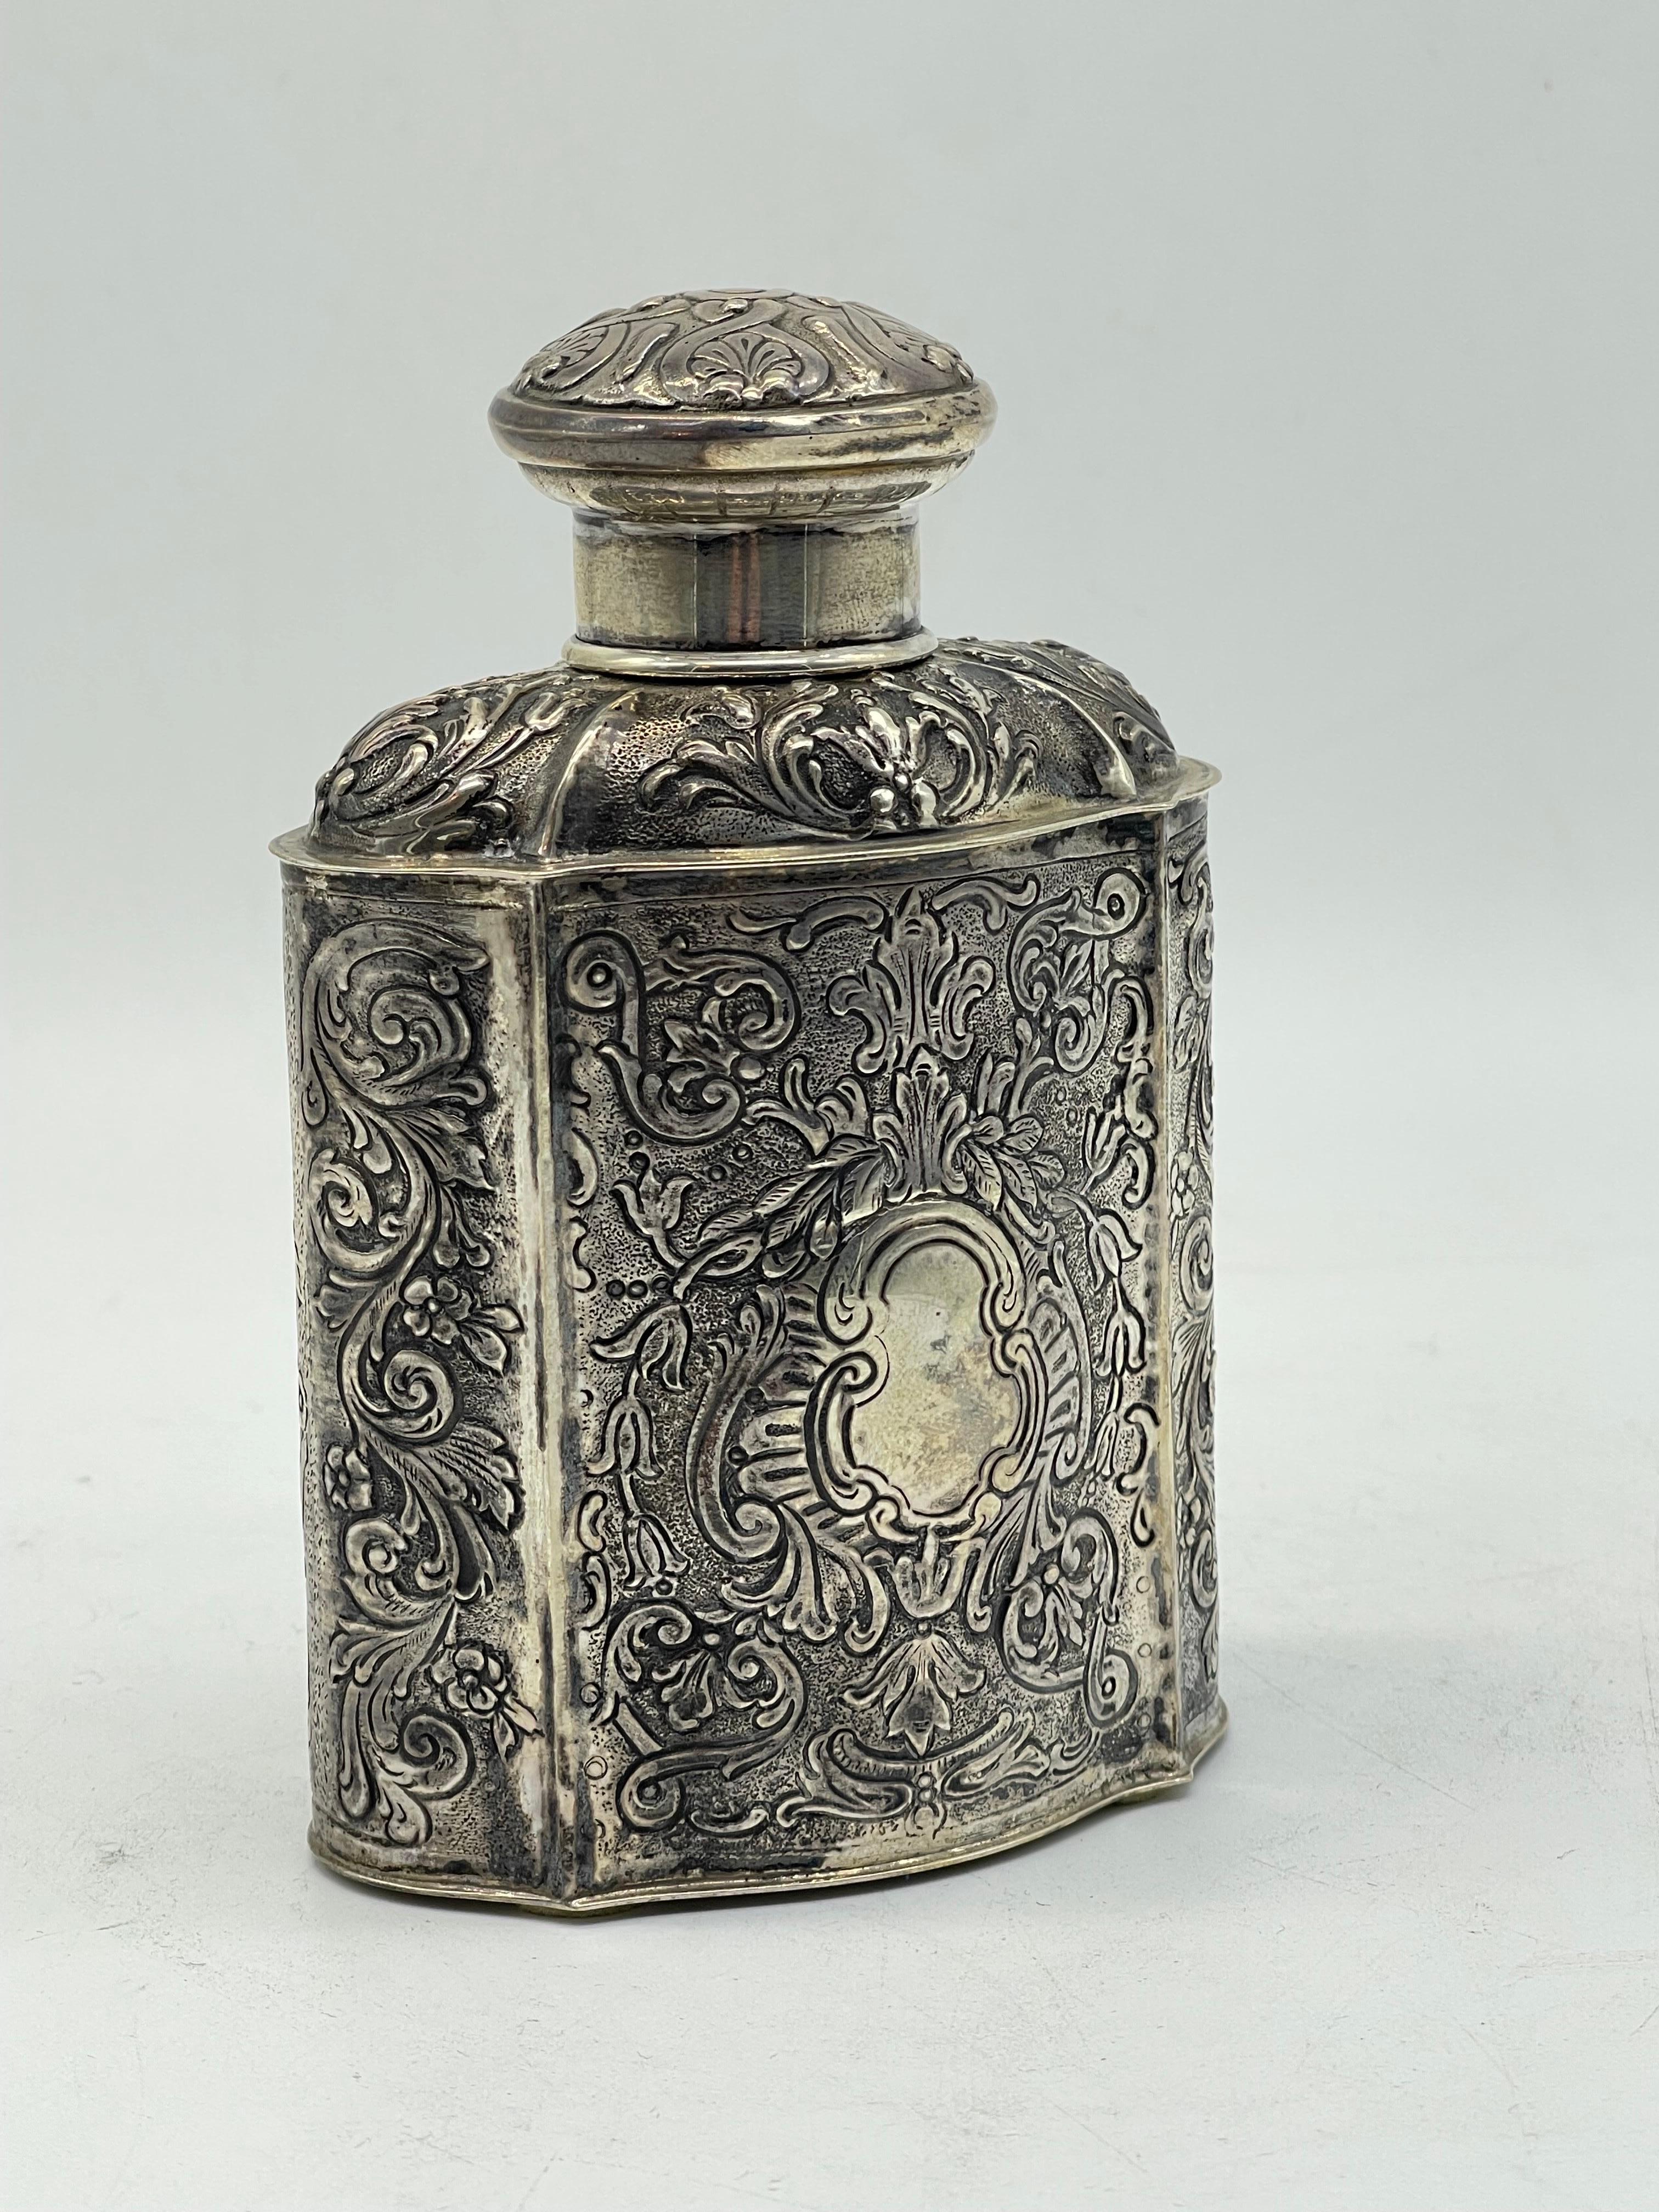 Antike 835 Silber Tee Caddy - Deckel Box 

Christophe Widmann Deutschland handgefertigt
Halbmond und Krone
 
Gewicht: 229 Gramm

Der Zustand ist auf den Bildern zu sehen.